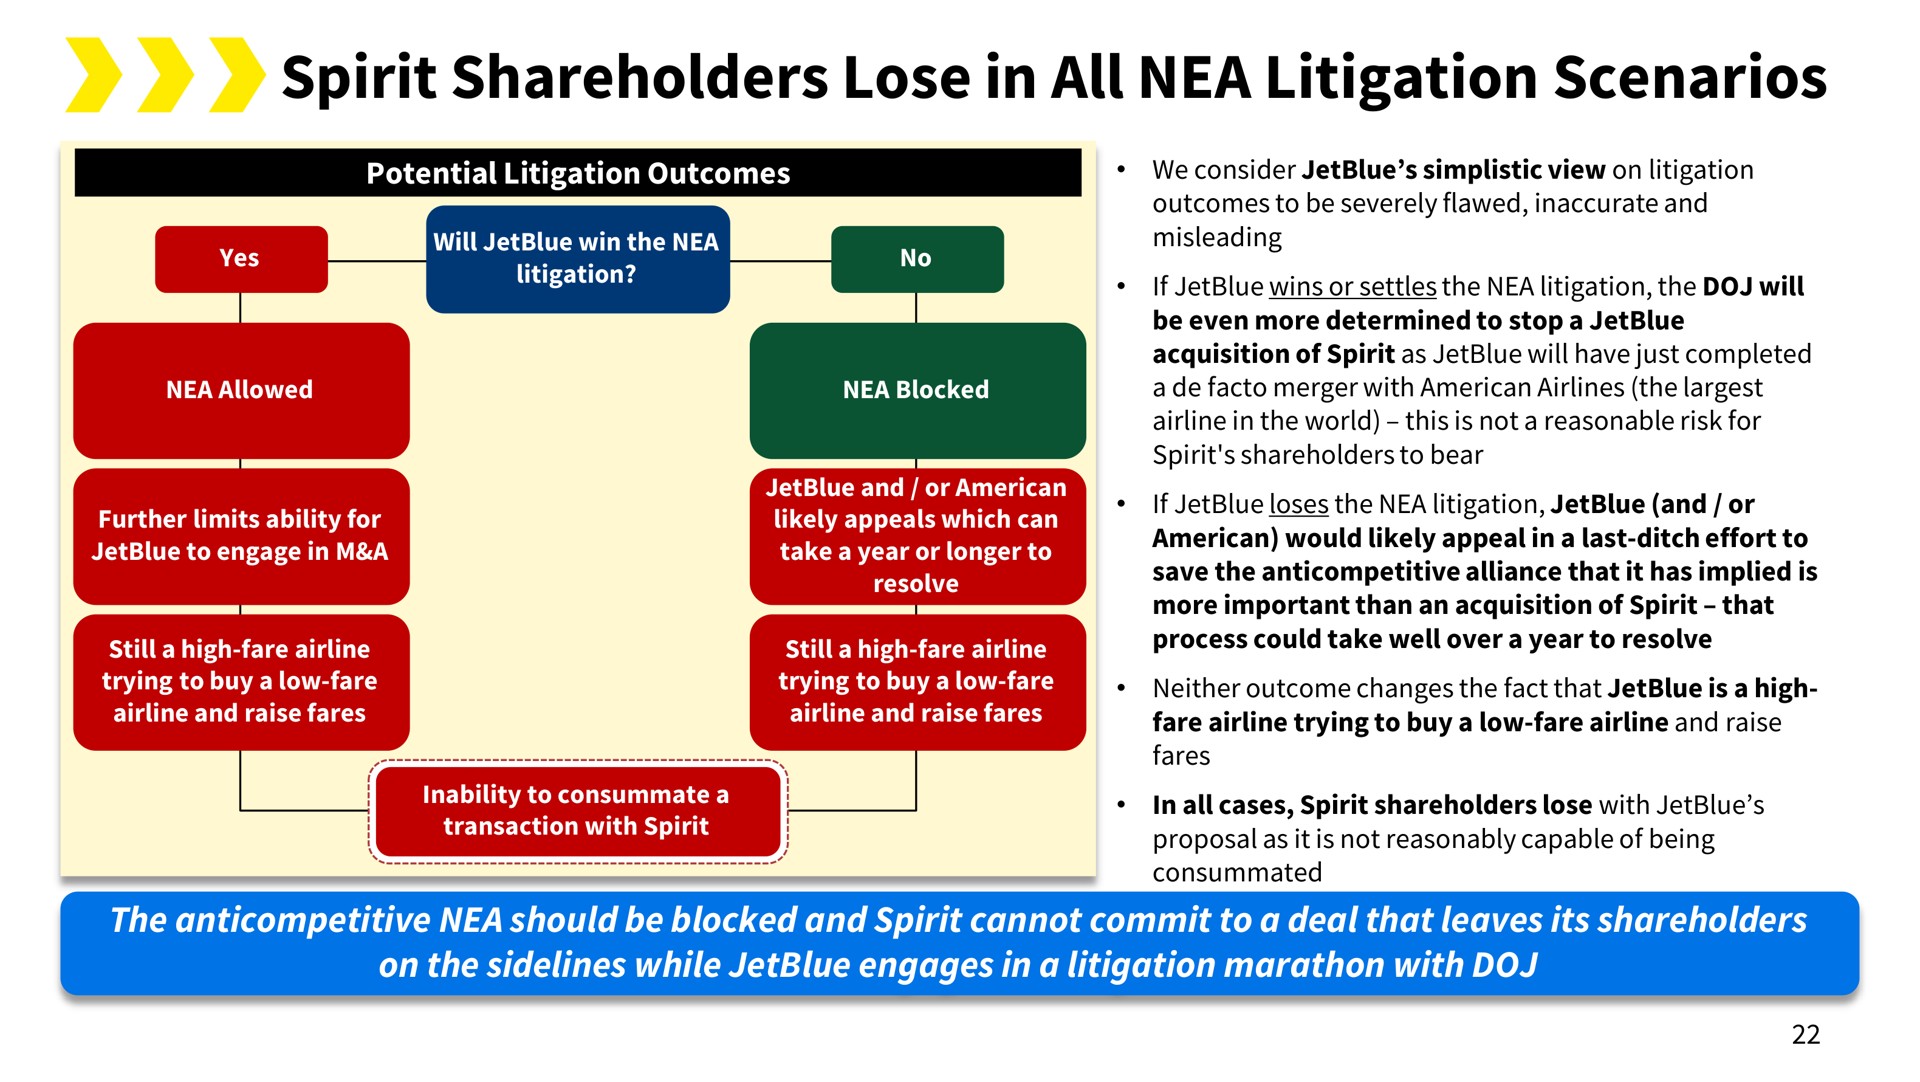 spirit shareholders lose in all nea litigation scenarios | Spirit